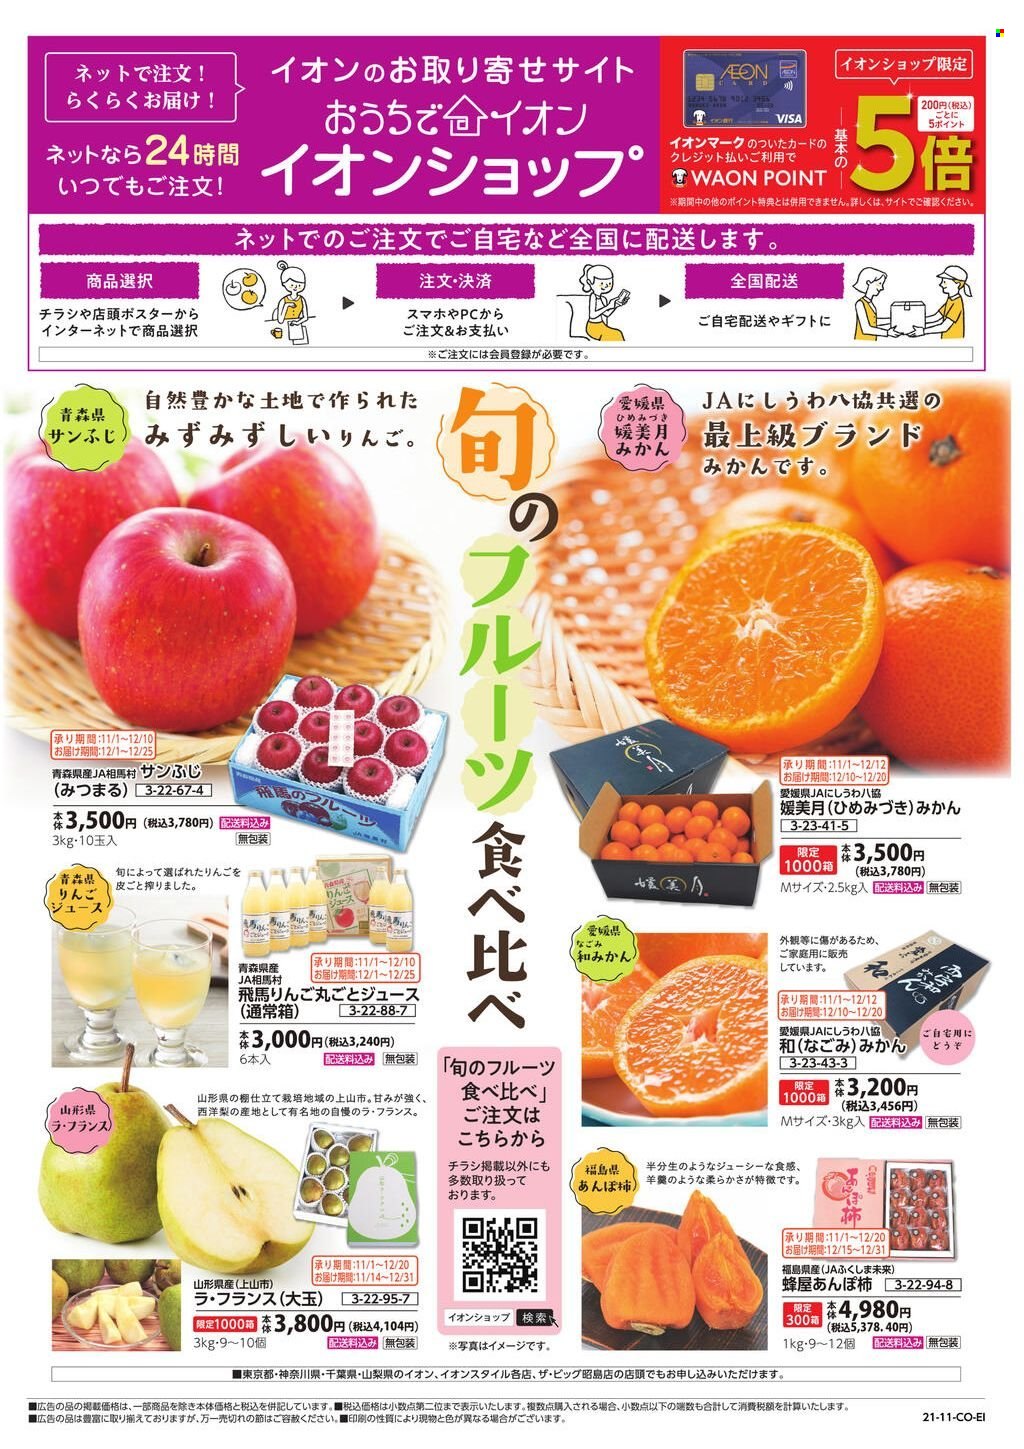 thumbnail - イオンチラシ - セール製品 - いちご, きのこ, りんご, みかん。ページ1。